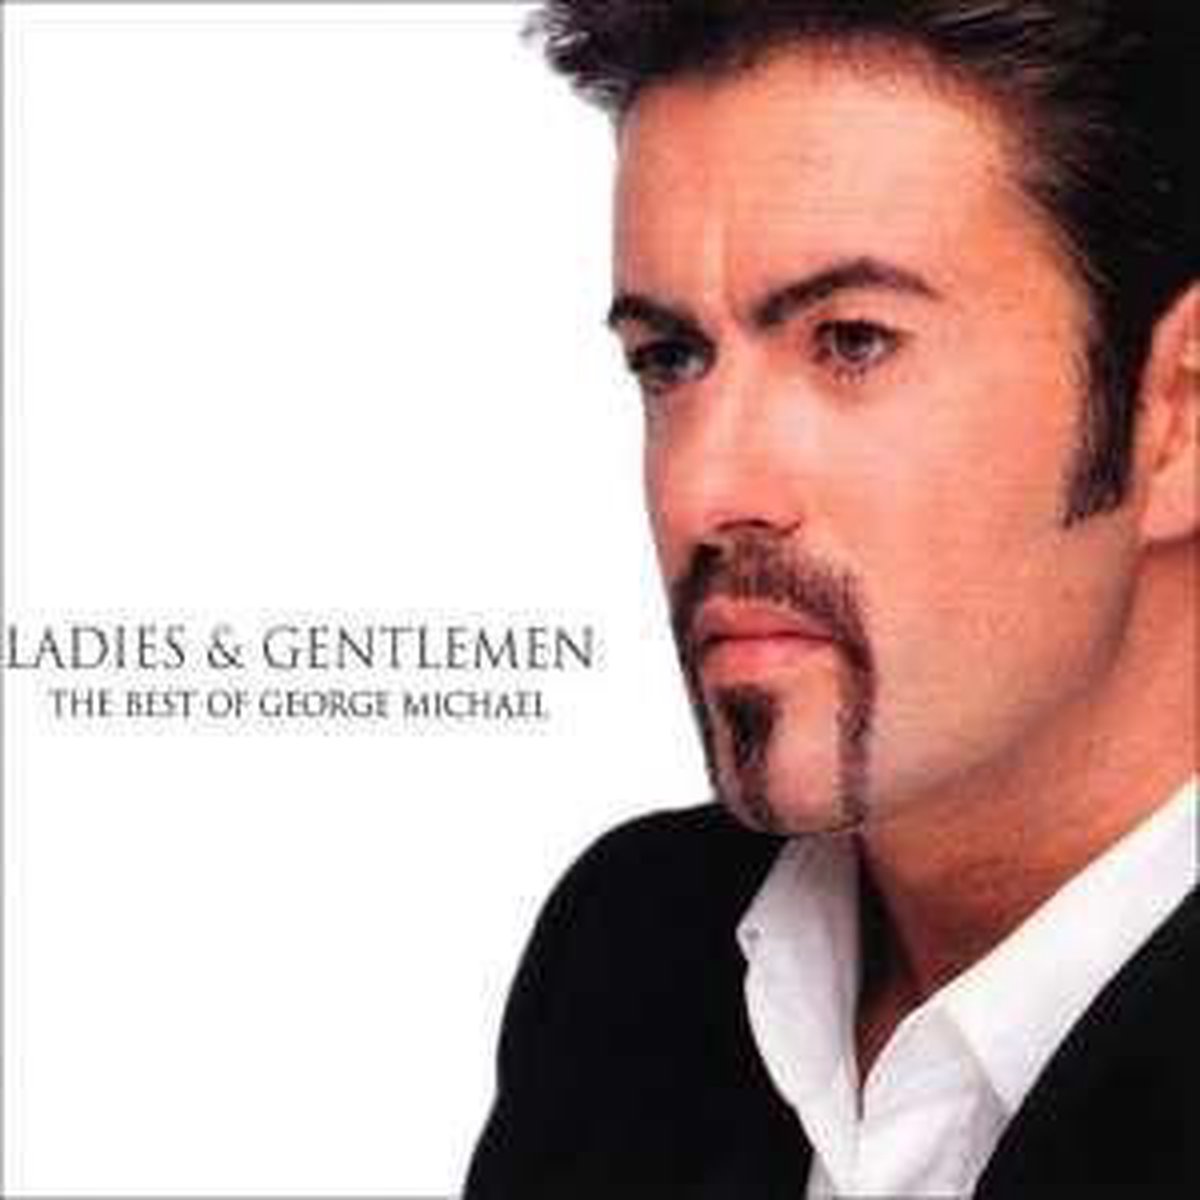 Ladies & Gentlemen: The Best of George Michael - George Michael